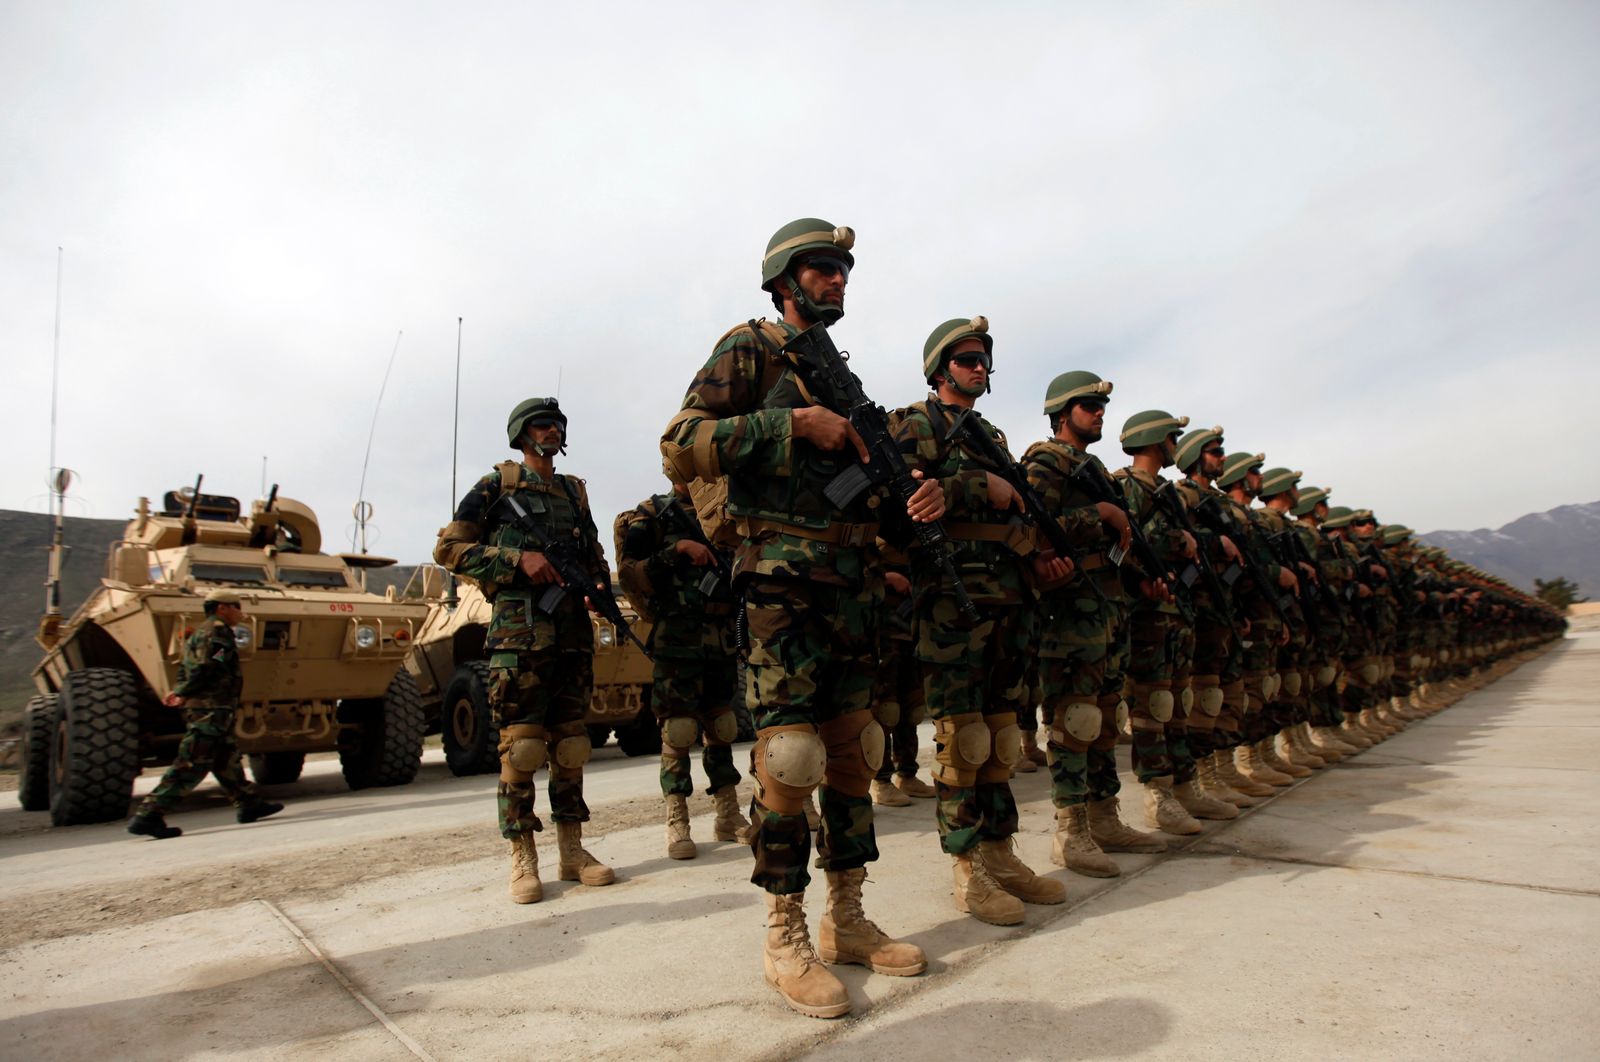 عناصر كوماندوس من الجيش الأفغاني خلال احتفالية عسكرية خارج كابول - 16 مارس 2013 - REUTERS